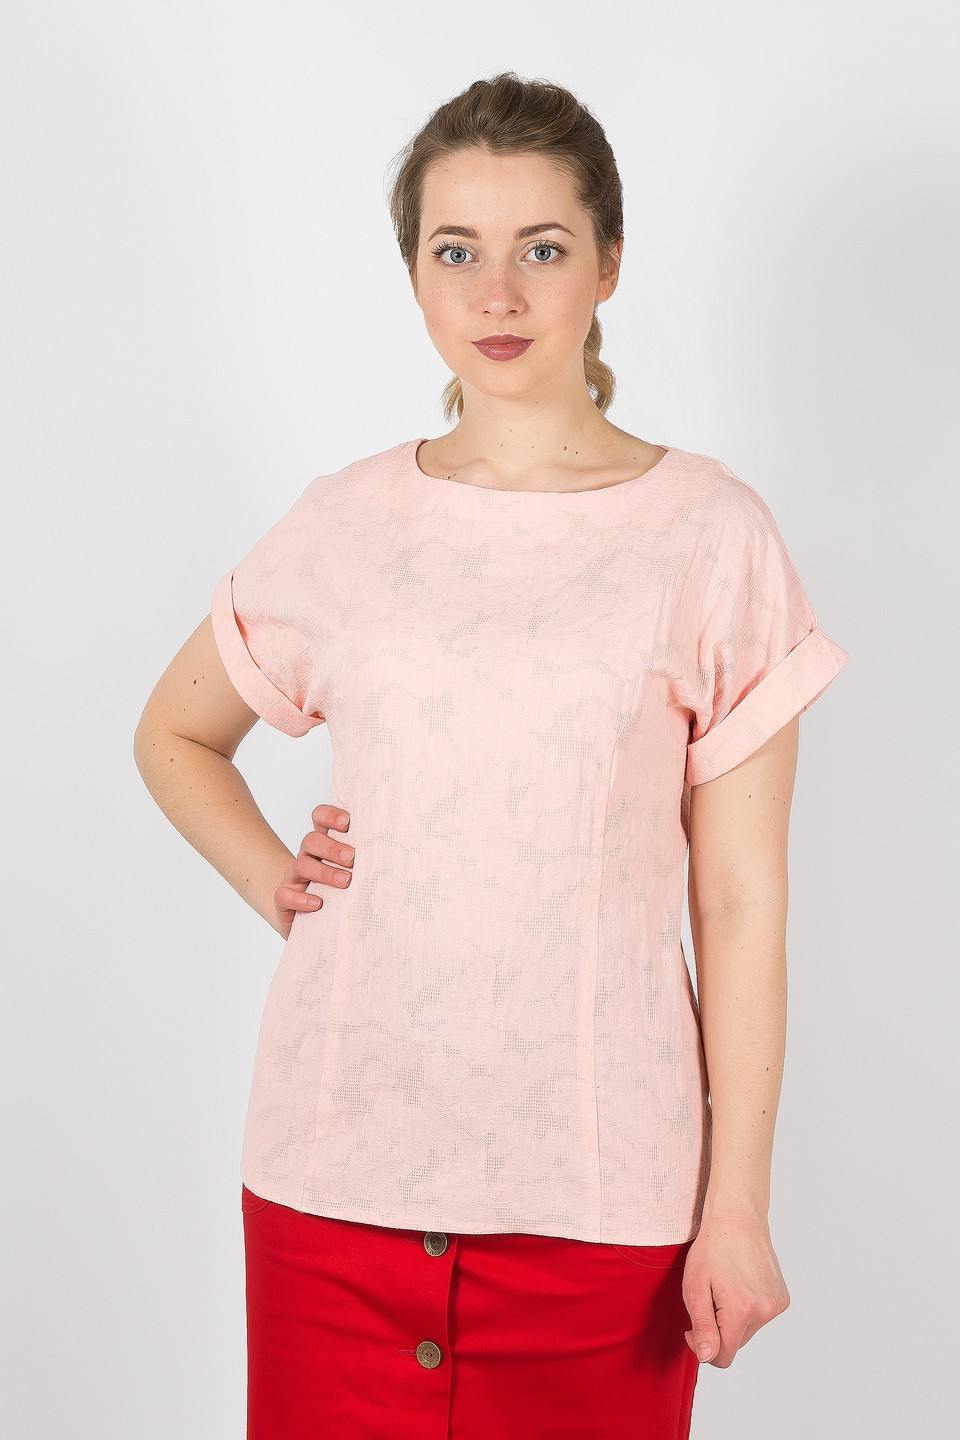 Сайт брава женская одежда. Нежно-розовый блуза. Блуза нежно розовая 54раз.. 4283 Брава блузка. Энгрос женская одежда оптом.